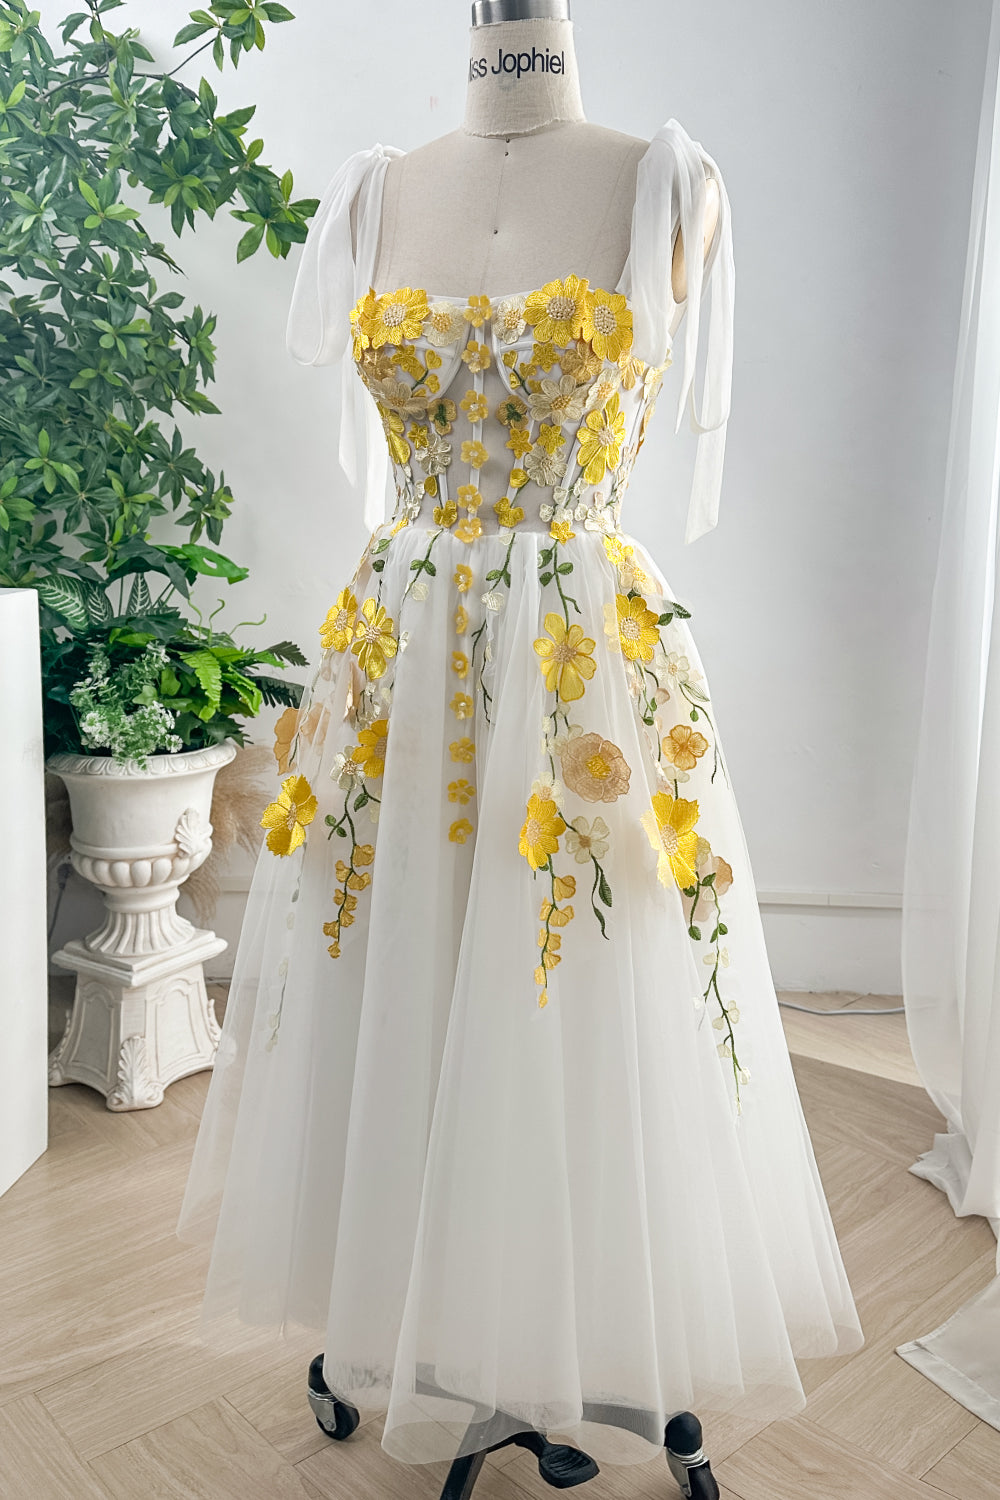 MissJophiel Corset Yellow Floral Applique Ivory Slit Dress with Tie Straps